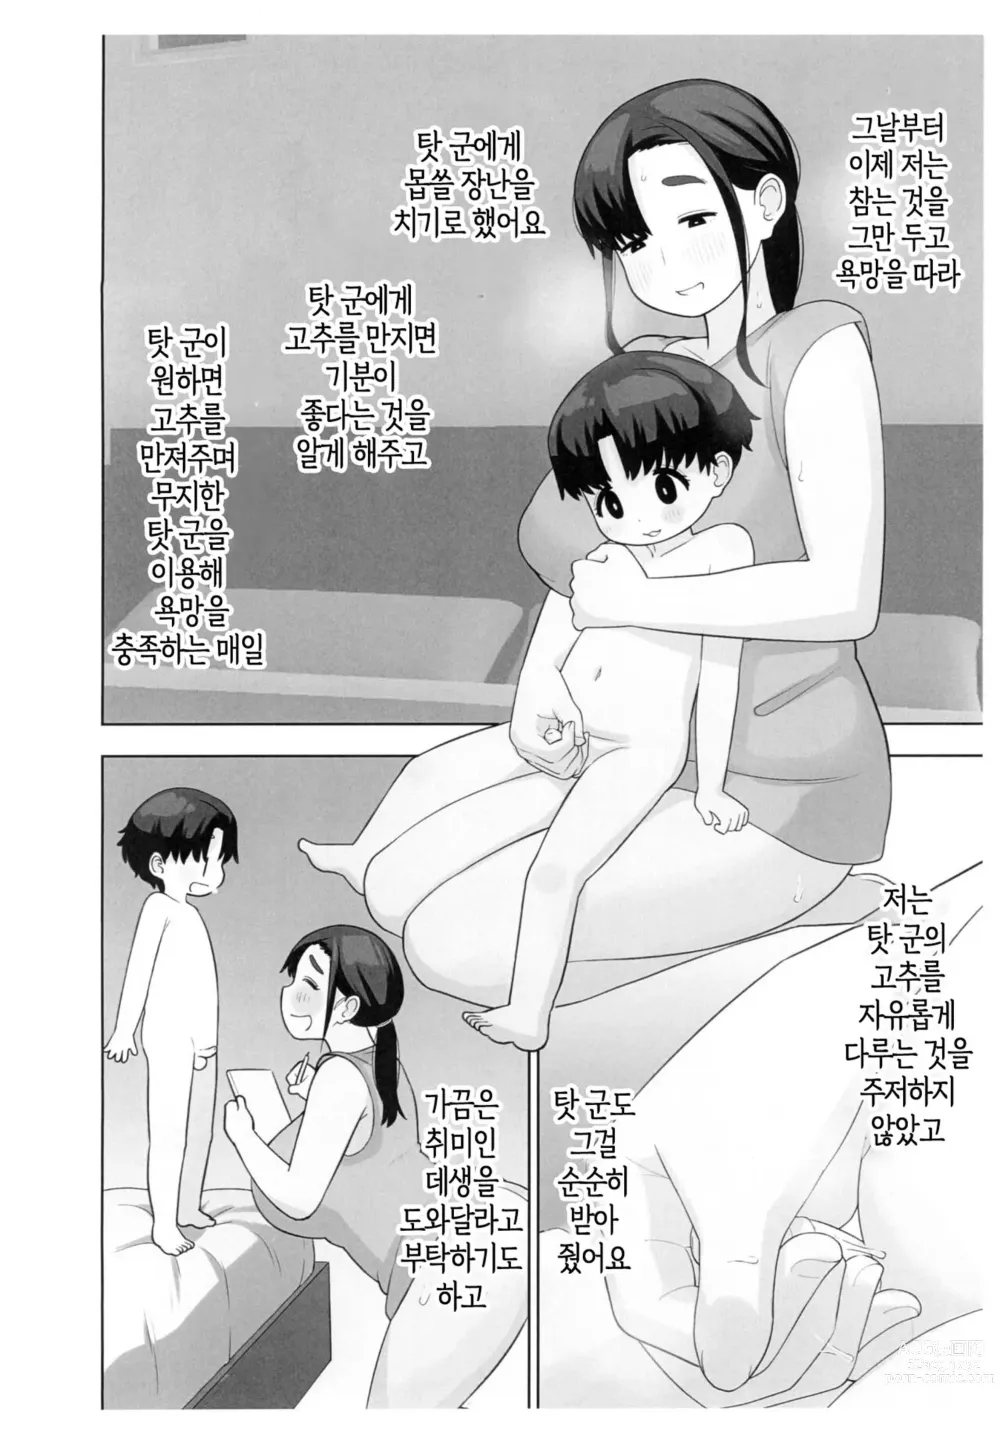 Page 7 of doujinshi 체험수기류 소설 에로동인 오네쇼타 동인작가 엄마의 비밀